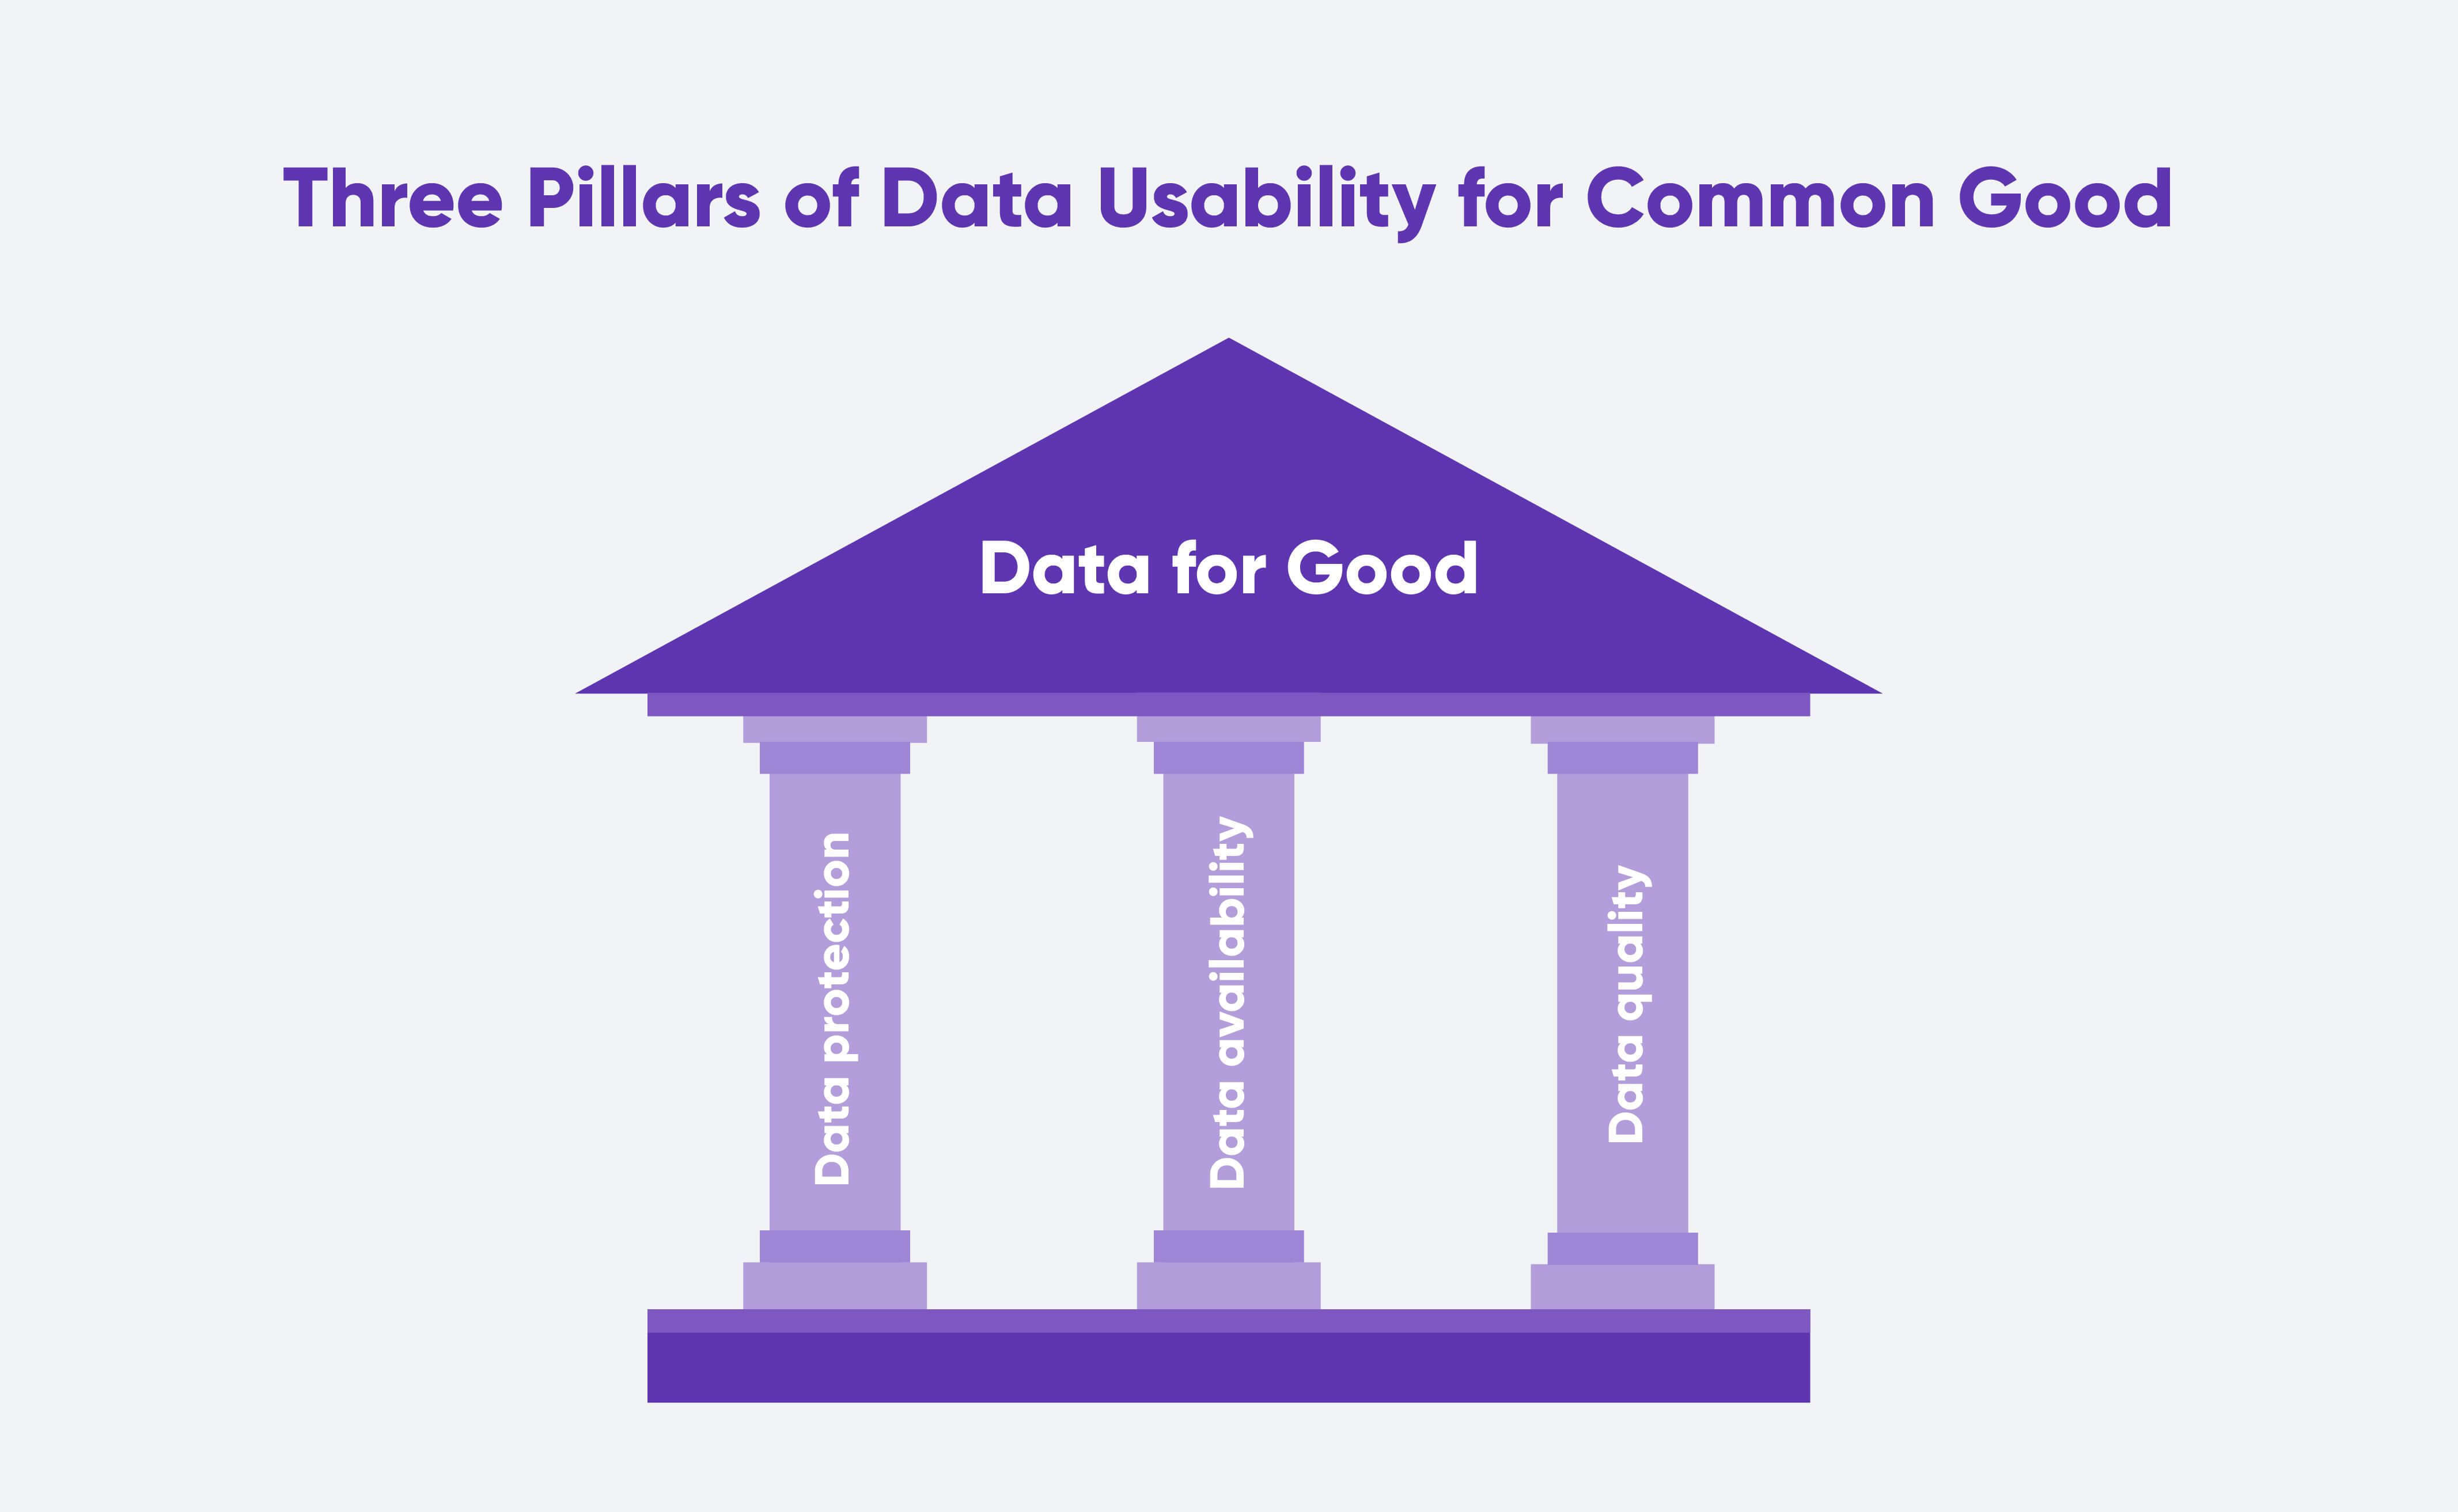 Pillars of using data for good